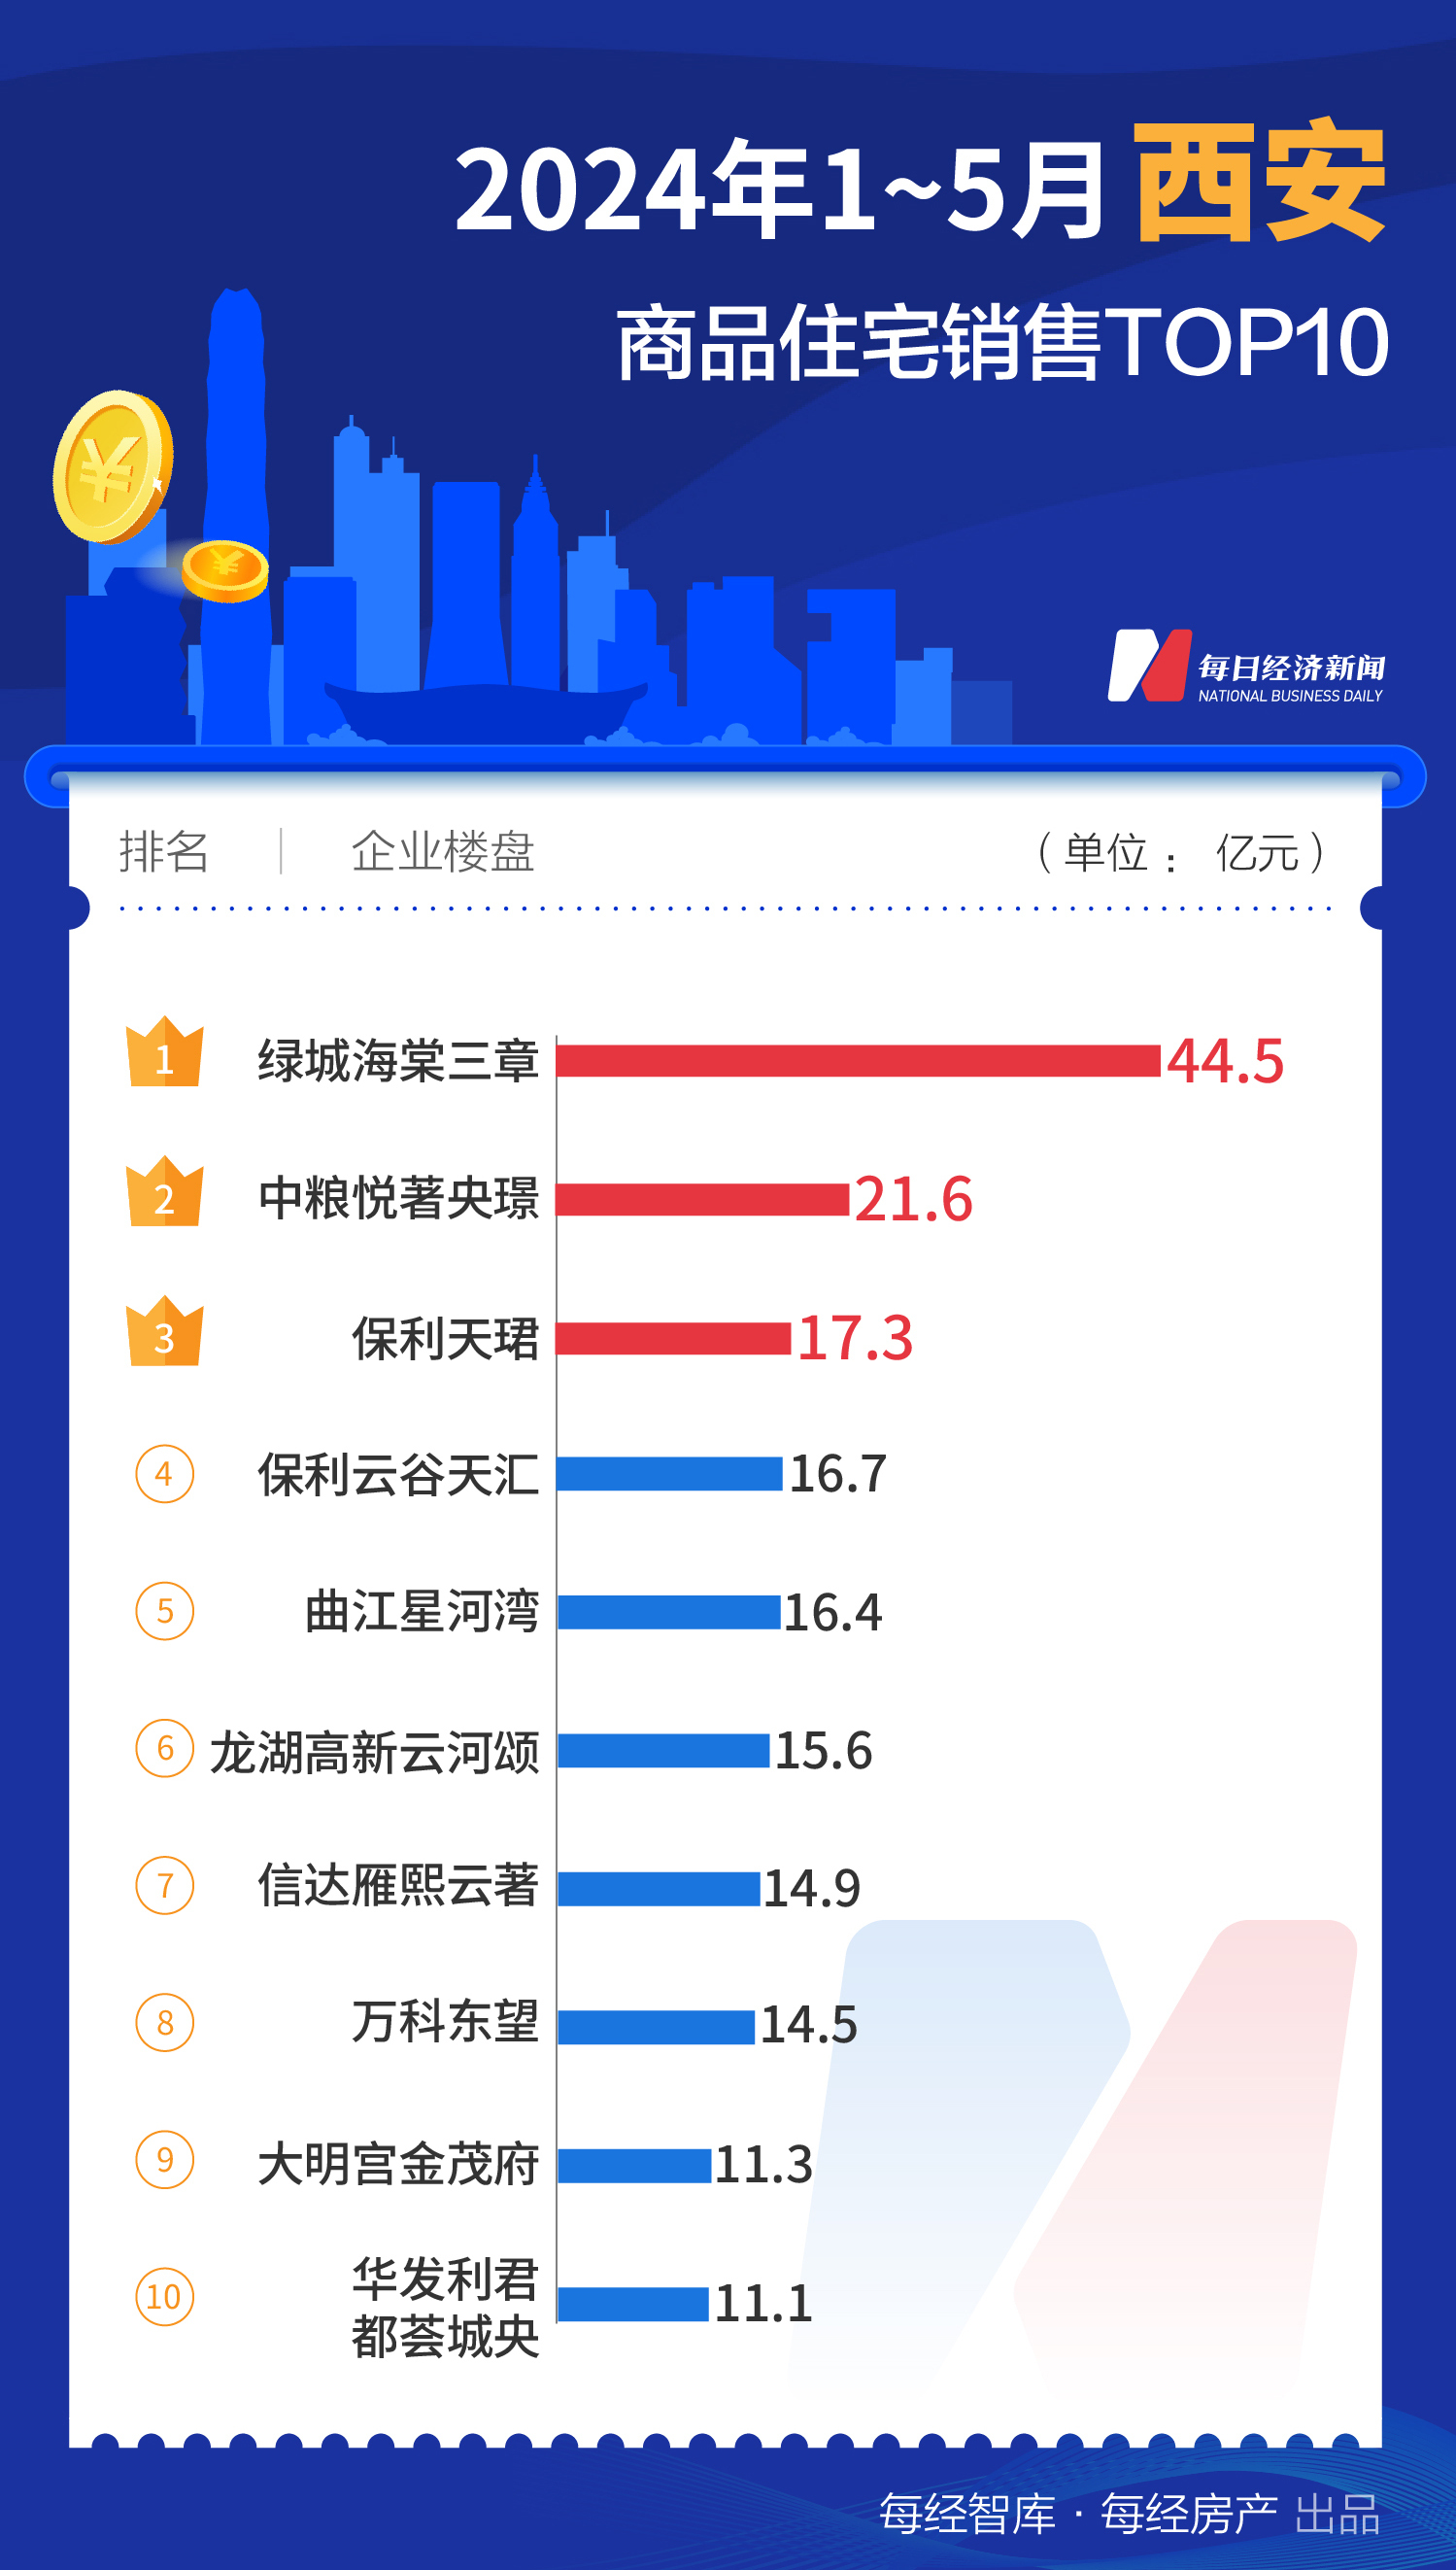 733.1亿元！1-5月上海TOP10新房销售额大幅领先全国  第4张